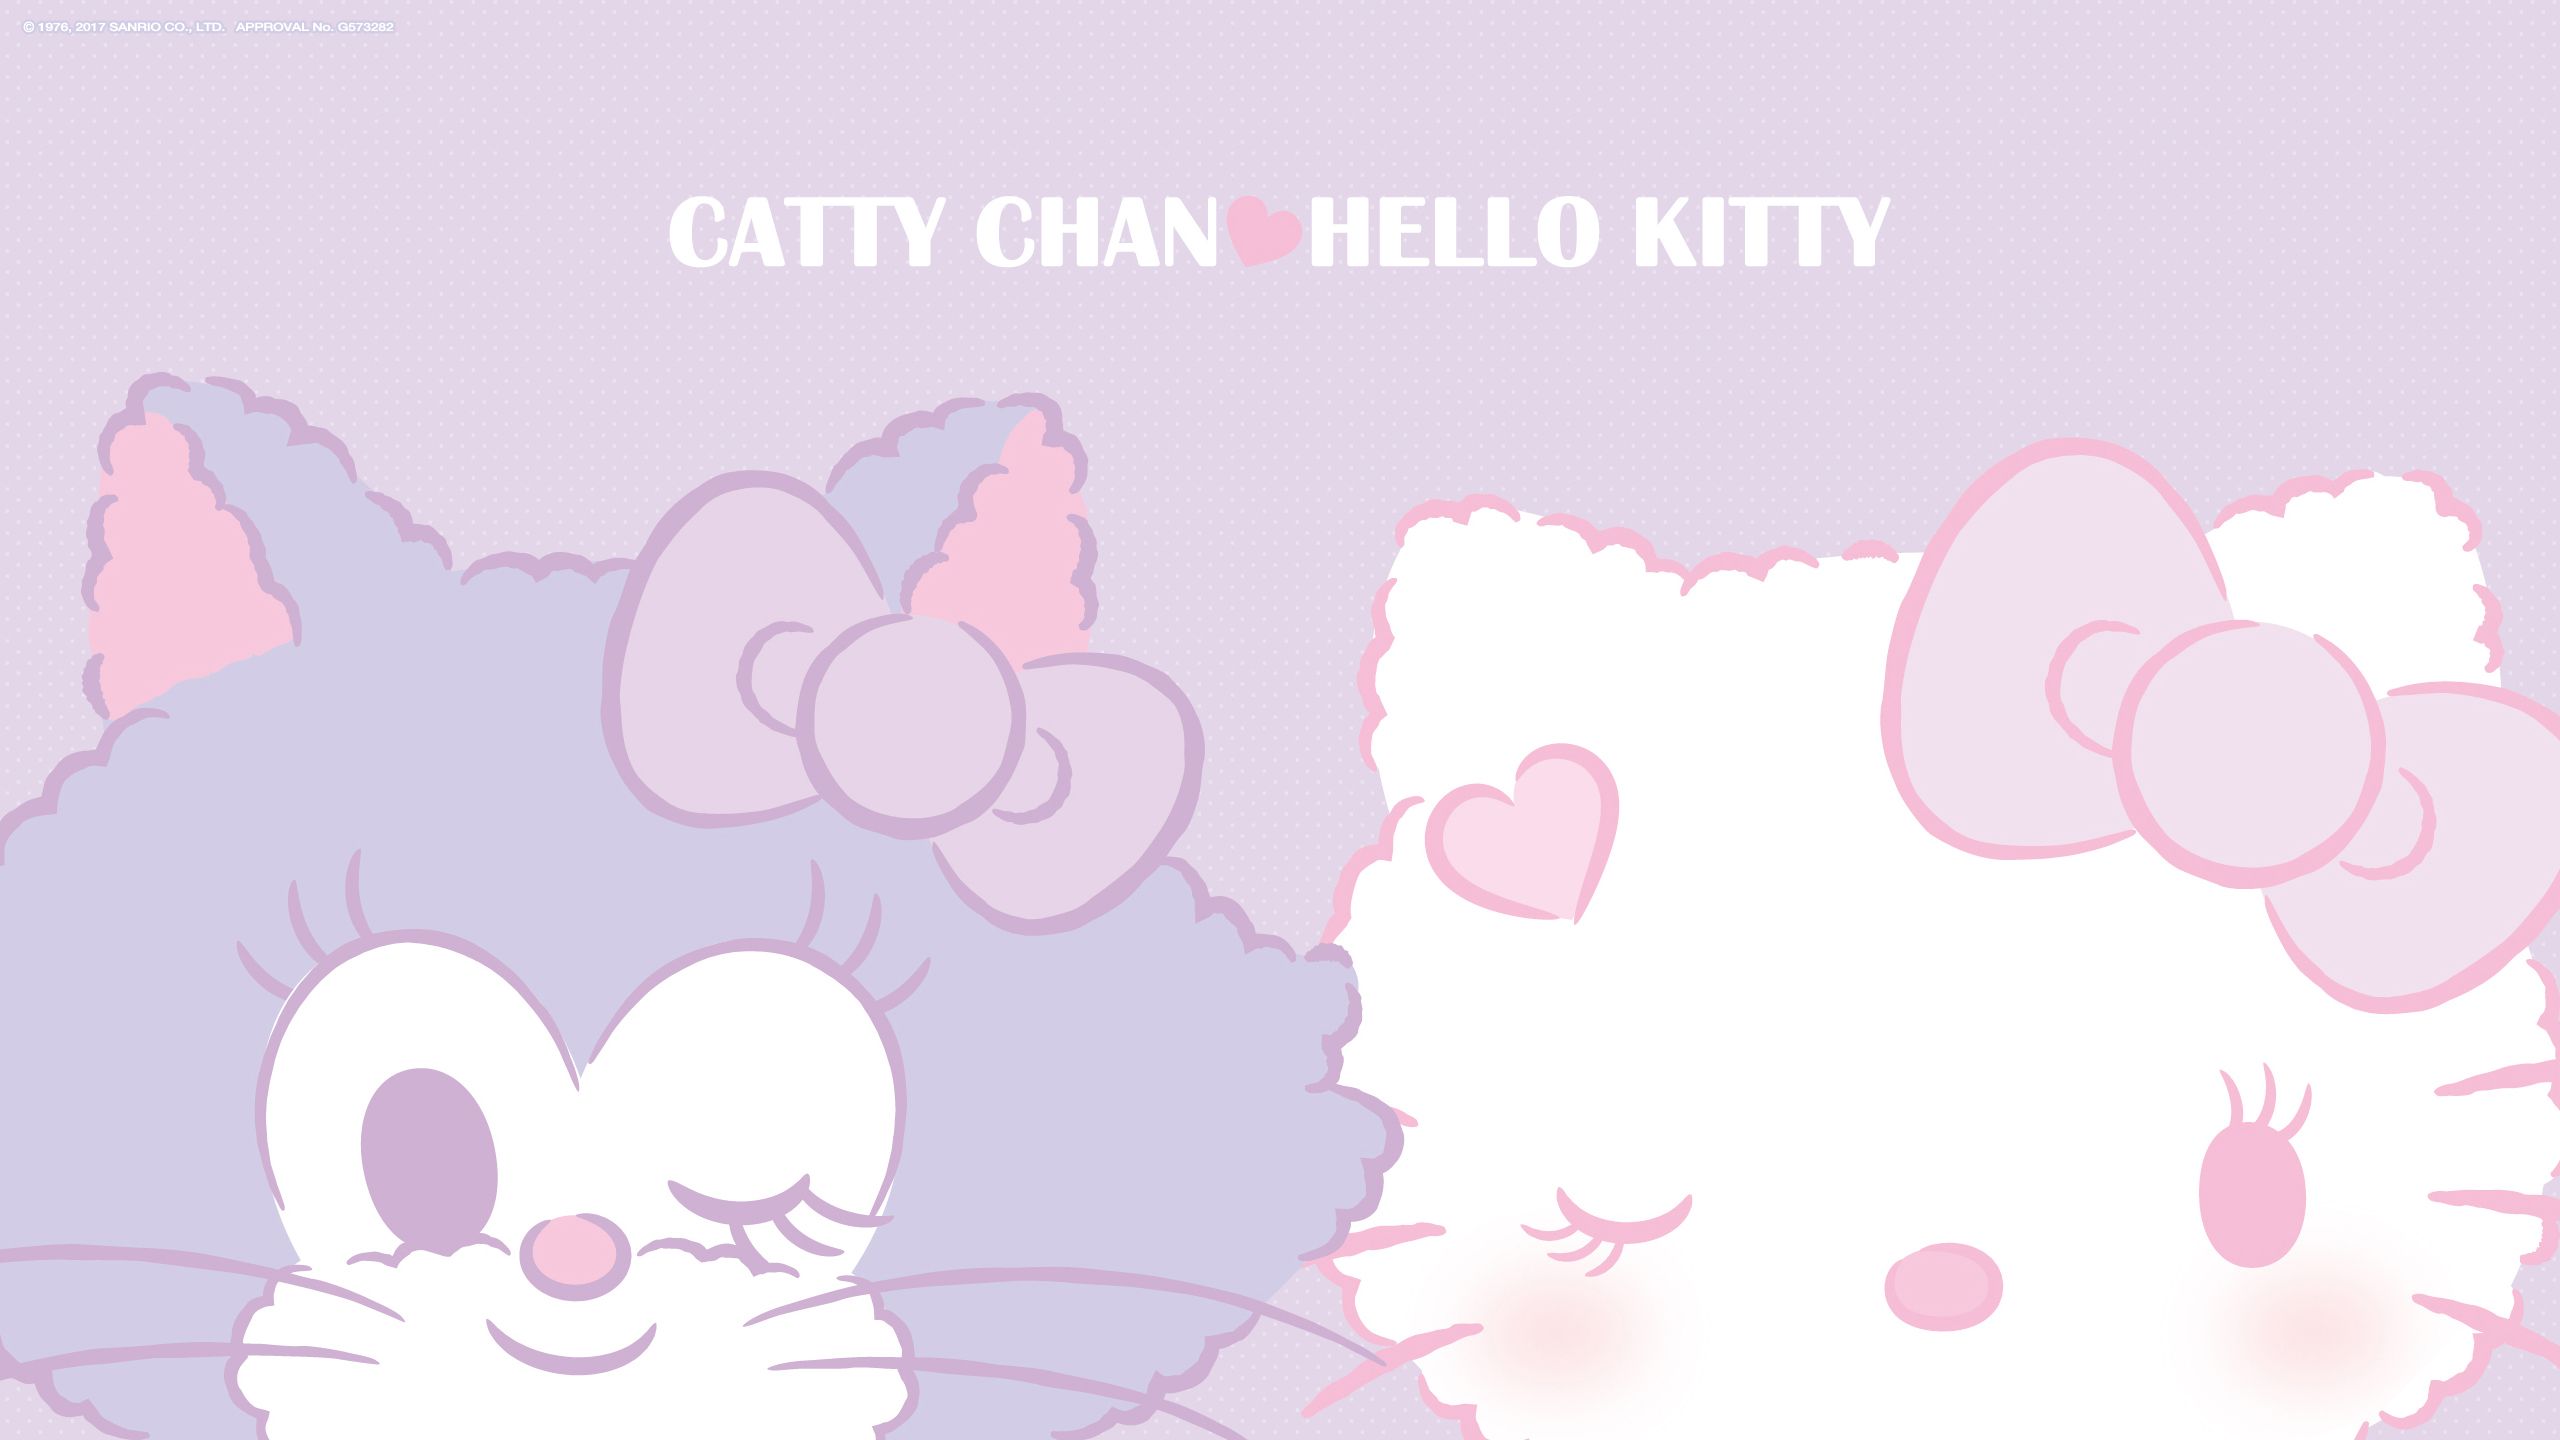 キャティーマン x ハローキティ CATTY CHAN x HELLO KITTY. Hello kitty, Kitty, Sanrio wallpaper